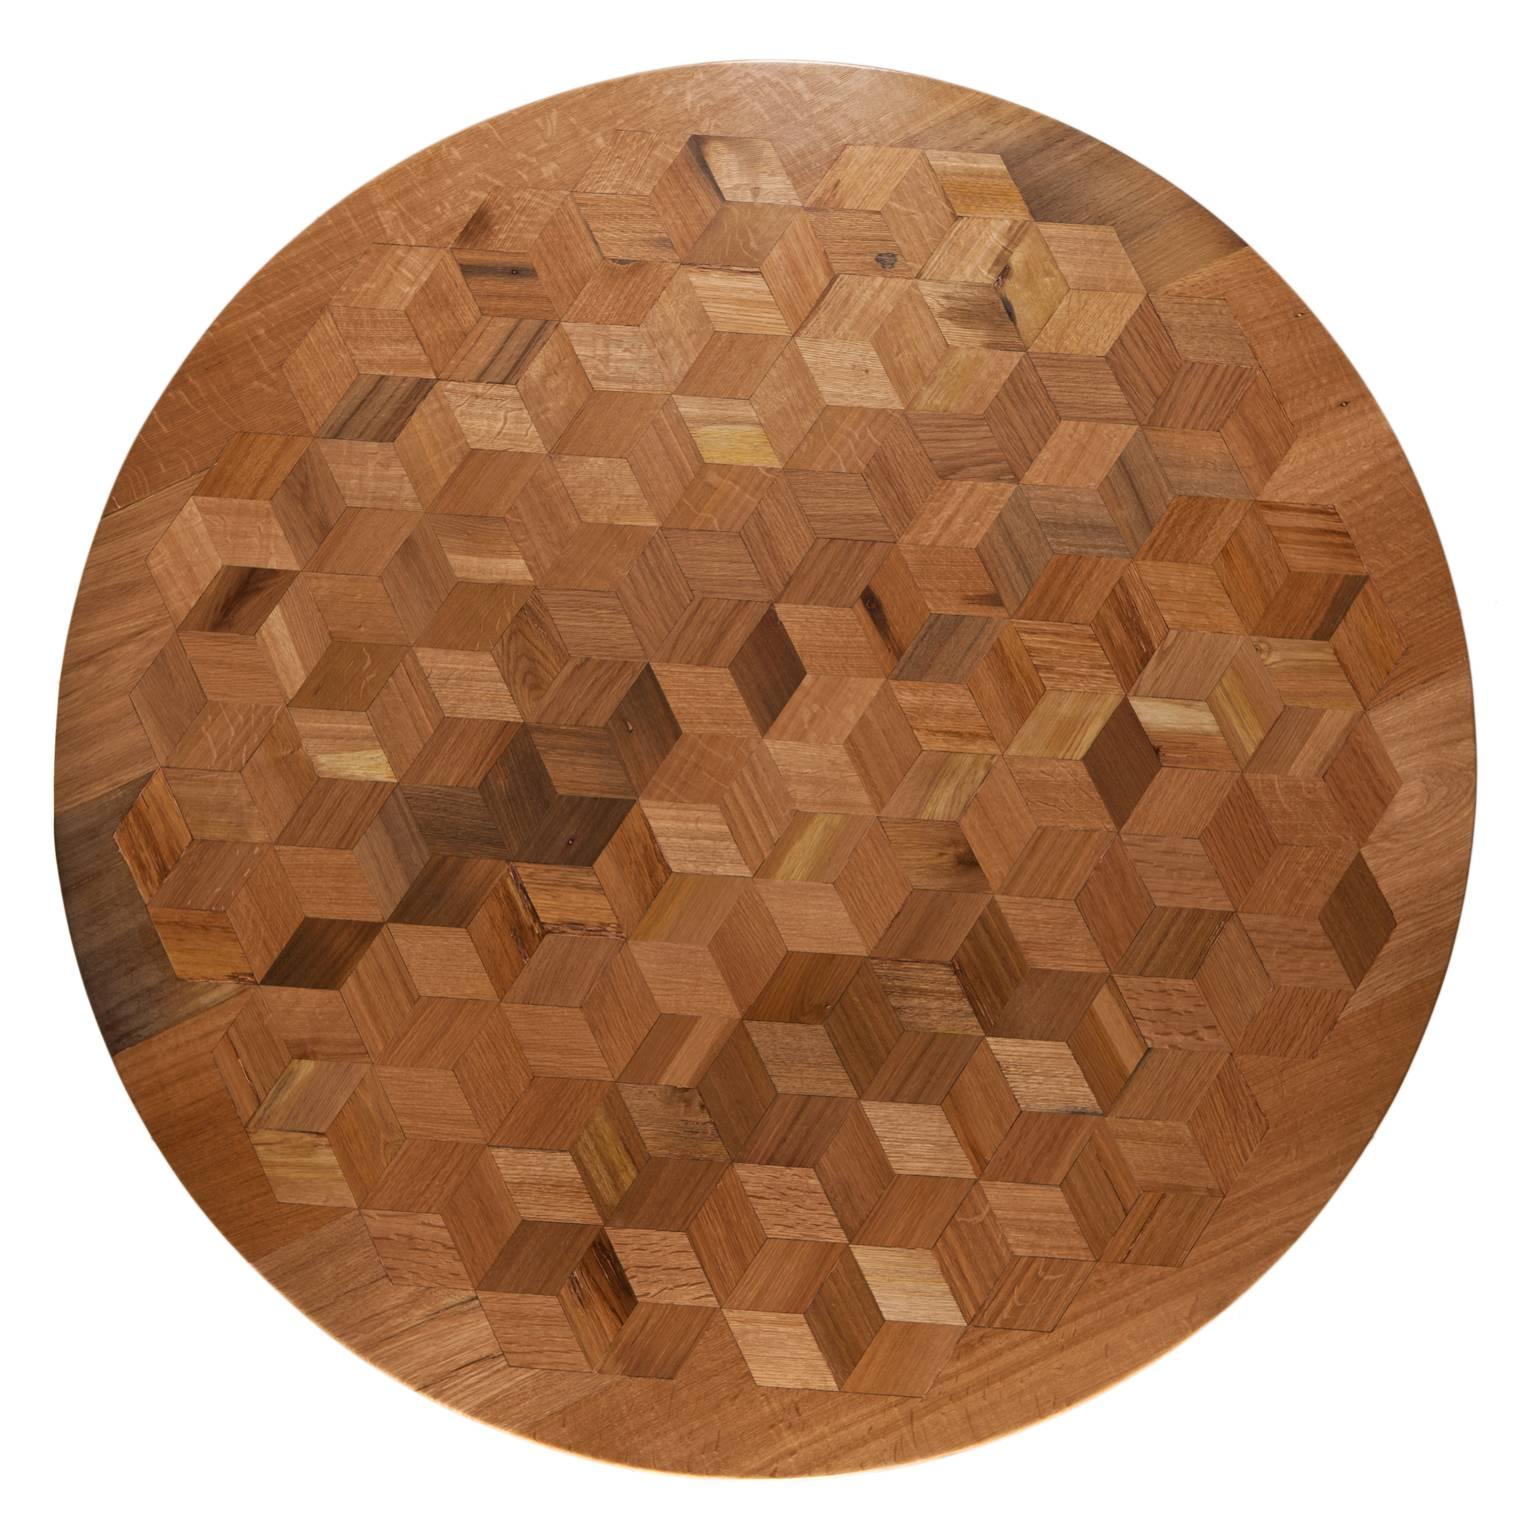 Inspirés par le travail d'Escher, nous voulons prouver avec Maurits qu'une table n'a pas besoin d'être antique pour être un impressionnant témoignage de savoir-faire.
Le plateau de table en marqueterie de chêne récupéré contient 222 rhombes